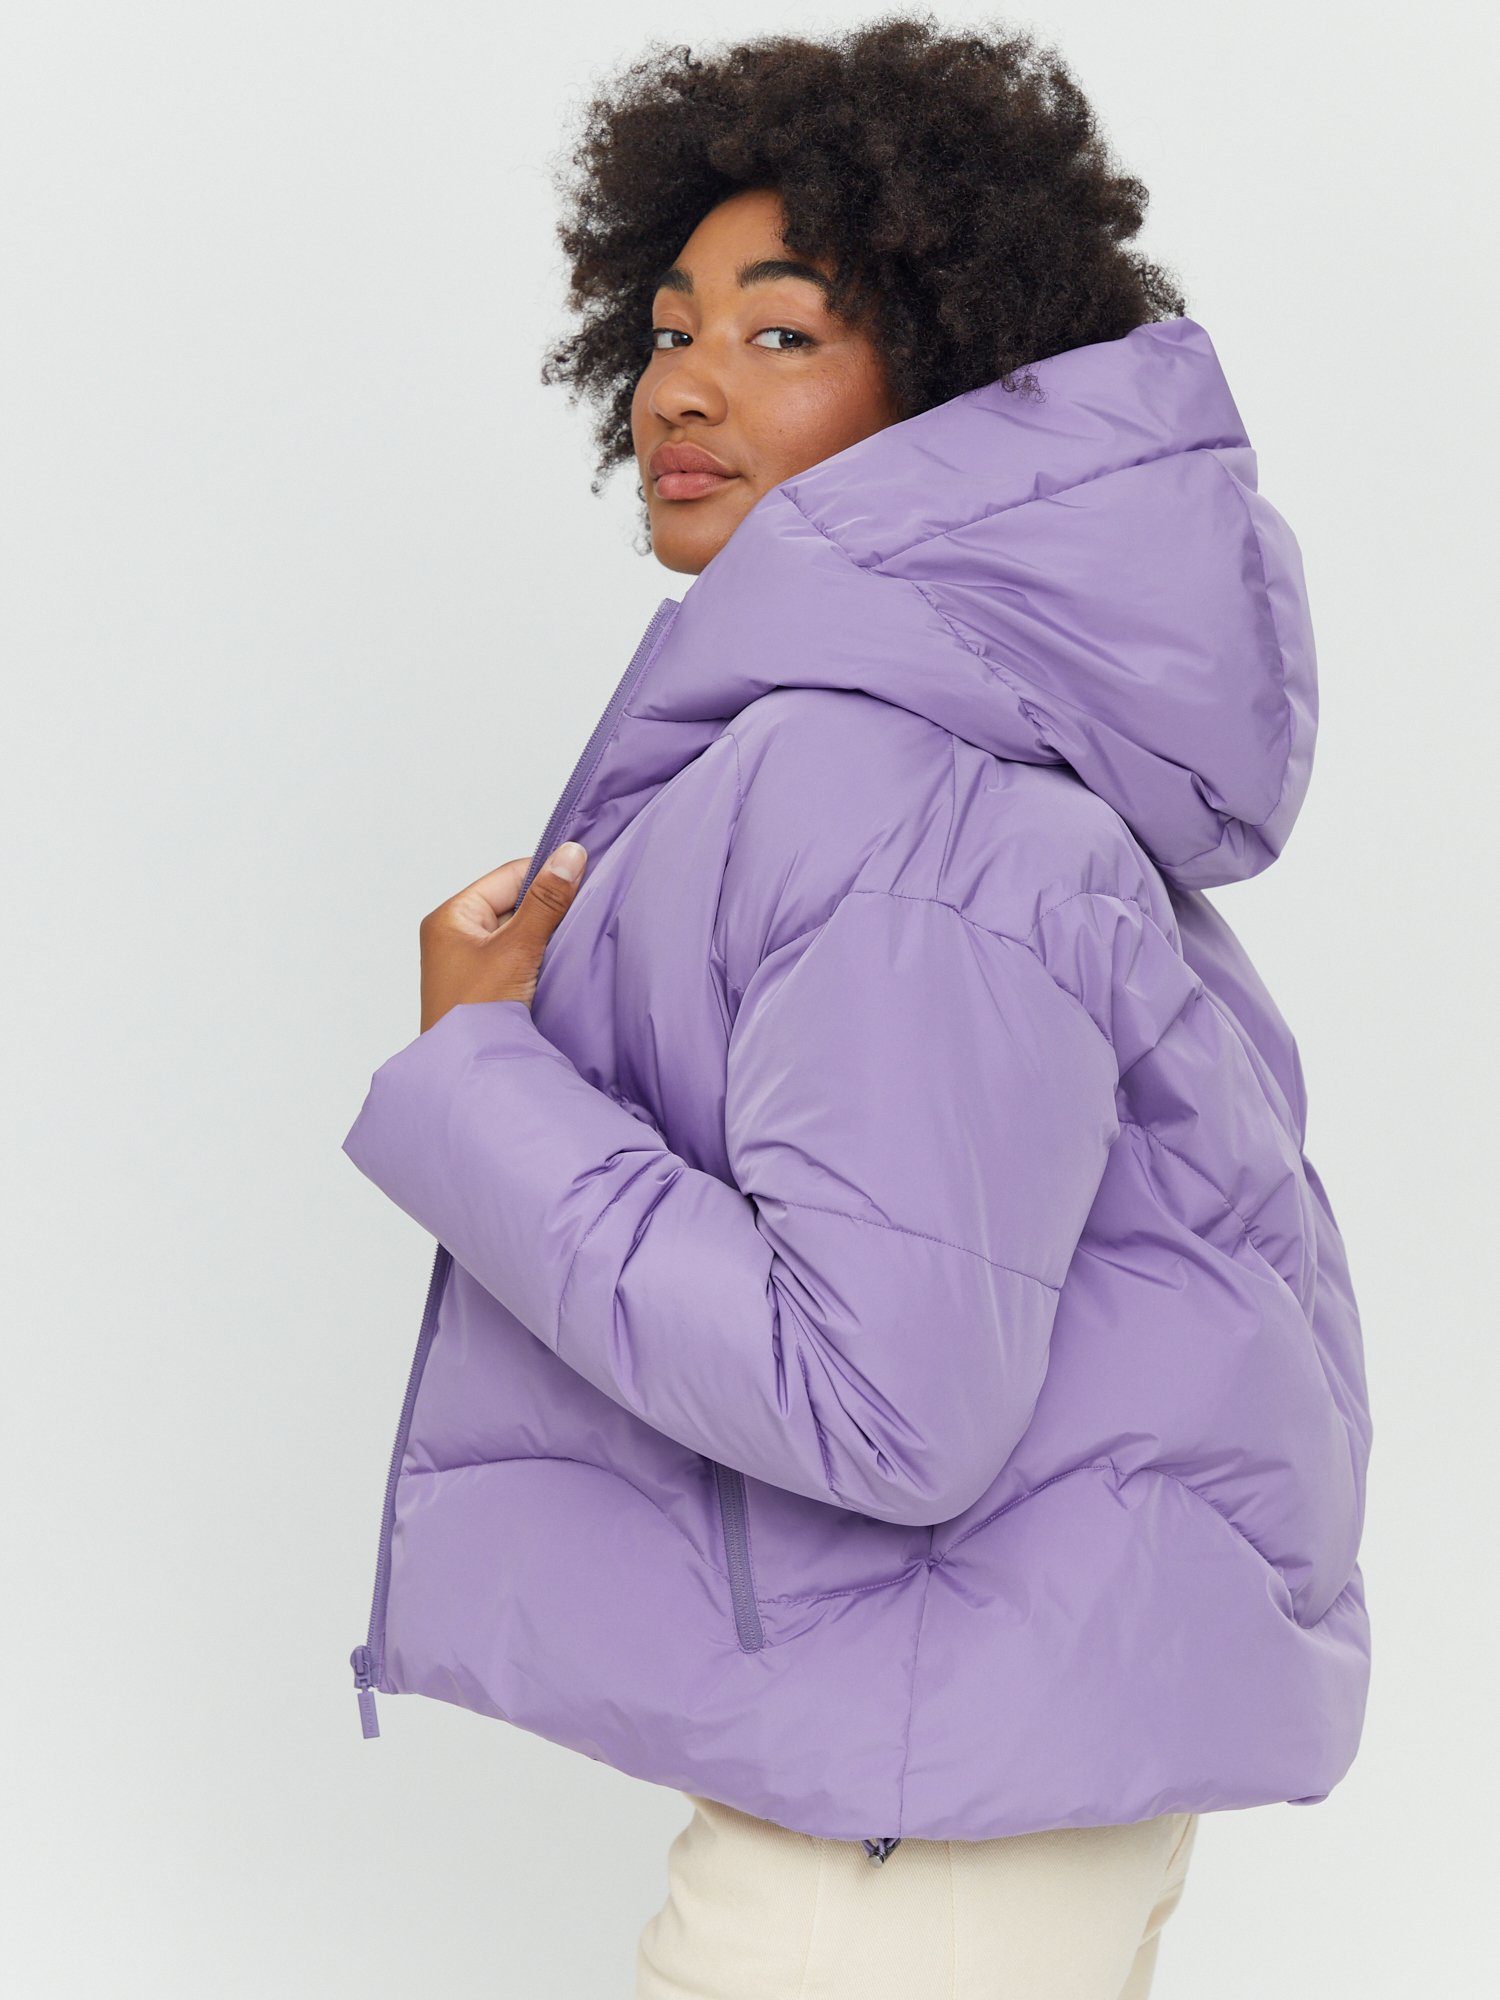 MAZINE Winterjacke Dana Puffer Jacket haze warm gefüttert purple